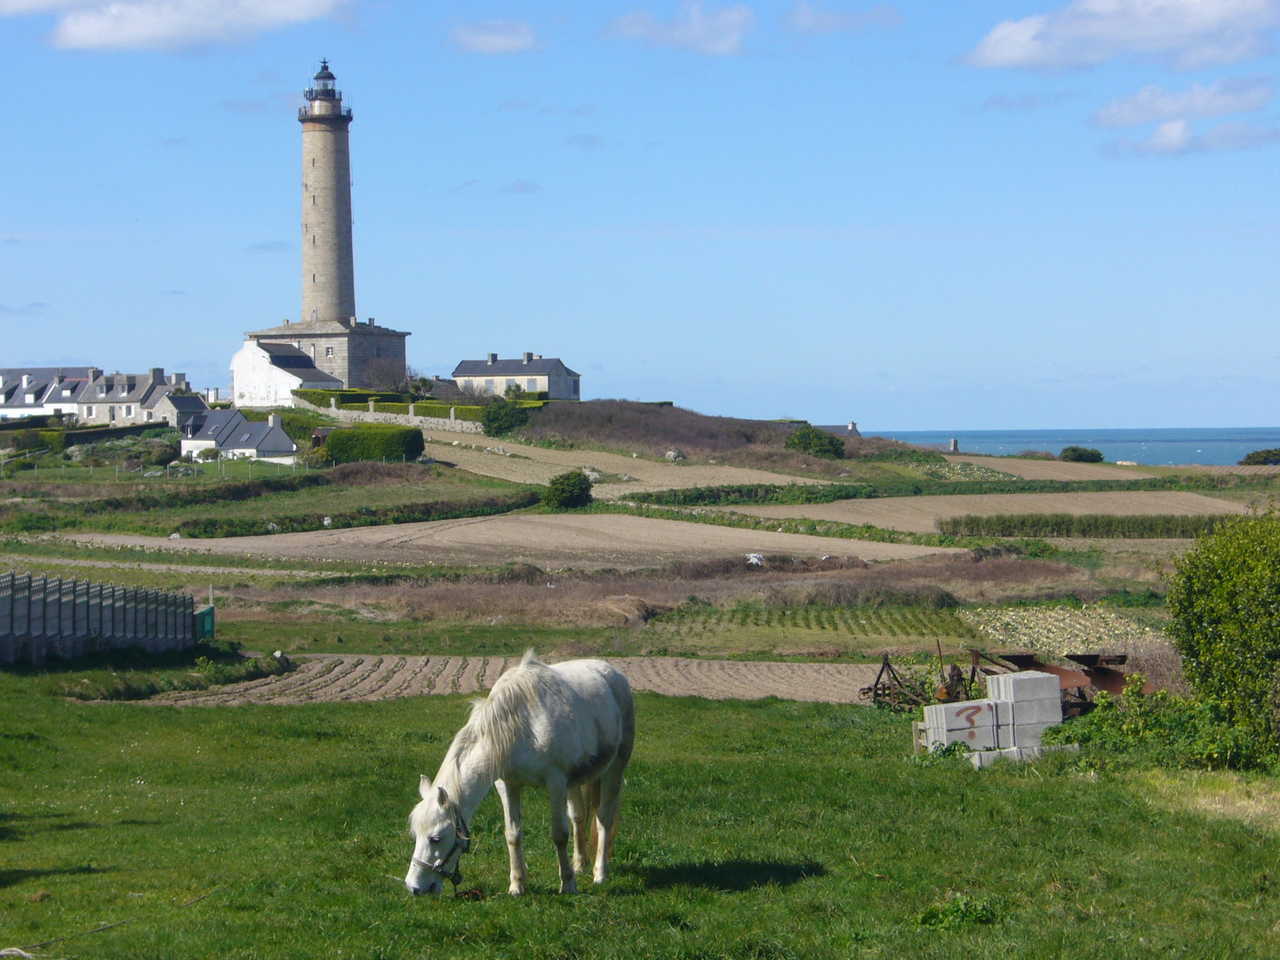 cheval blanc broutant de l'herbe dans les champs , phare au dernier plan